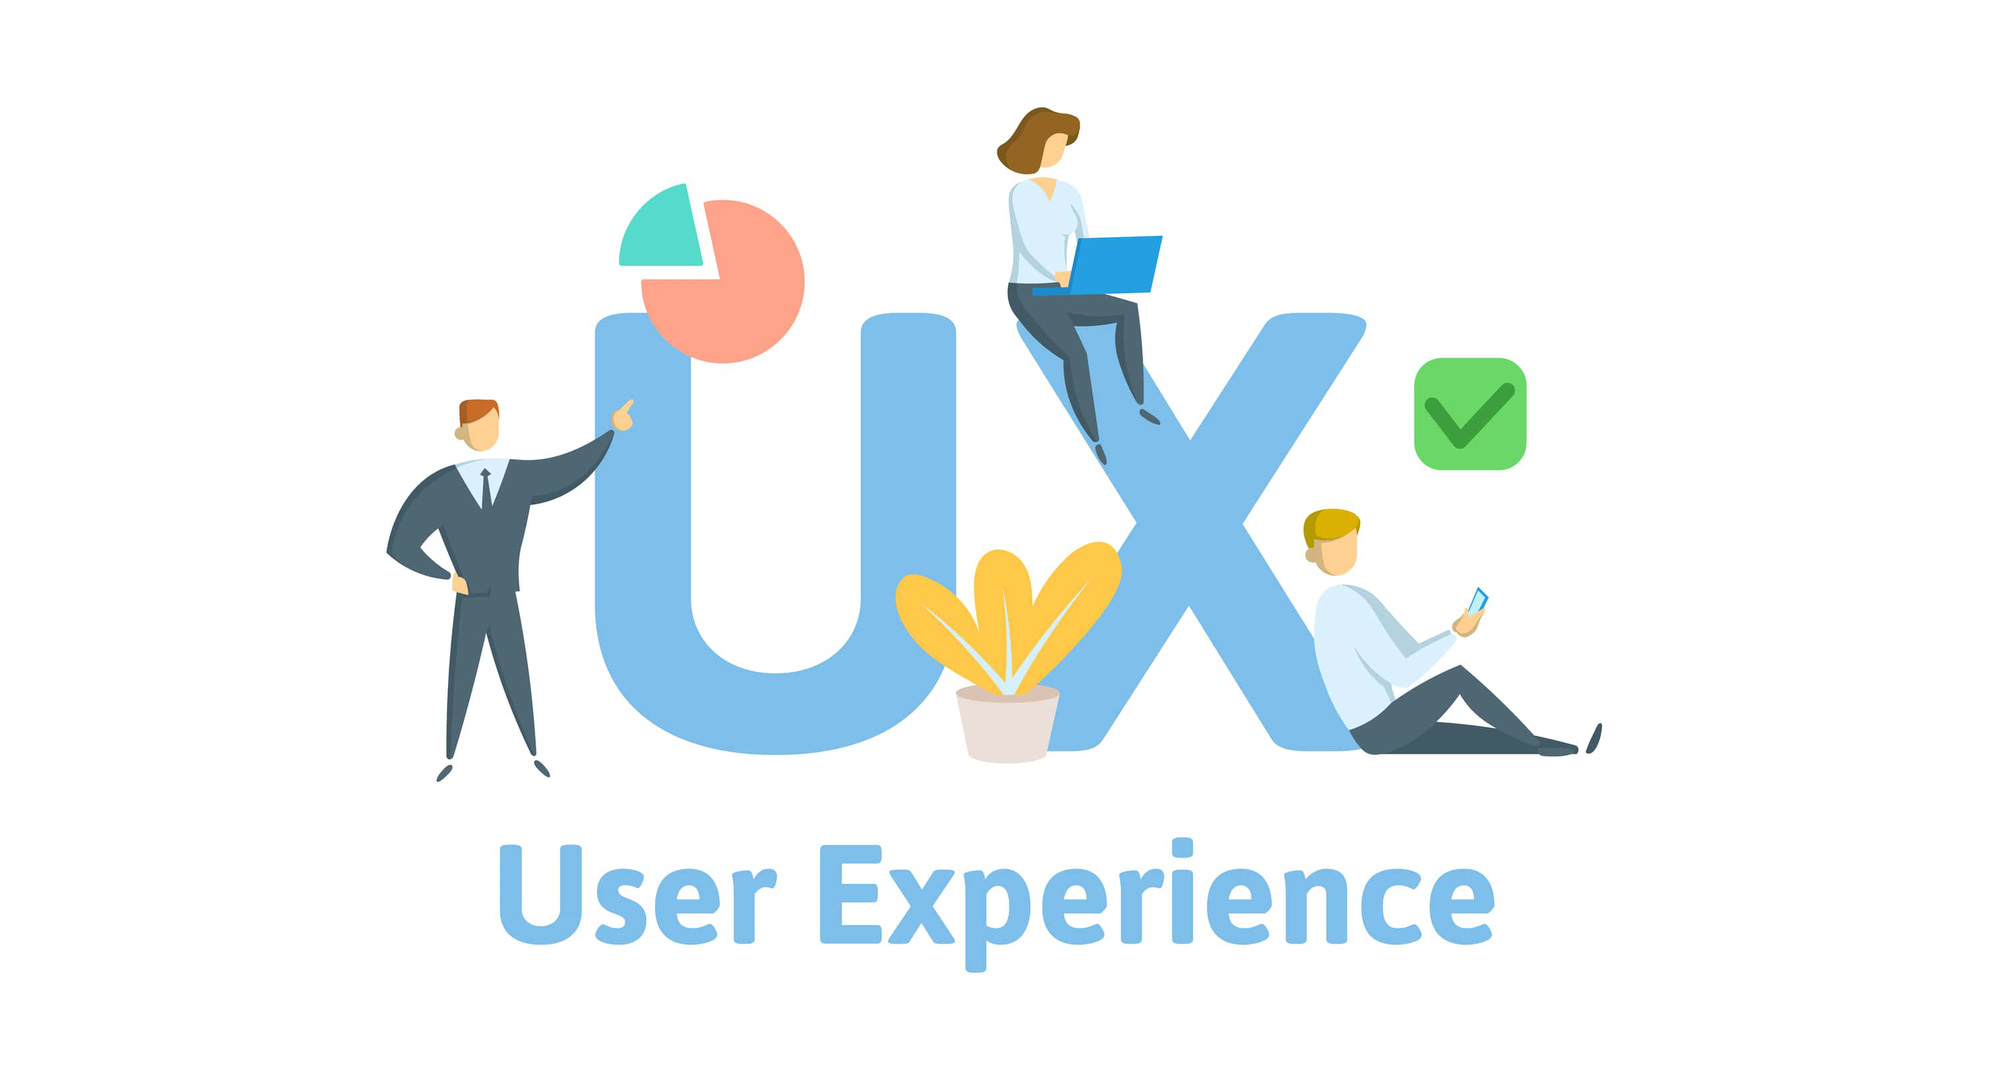 Vì sao các công ty du lịch cần chú trọng vào chiến lược UX (User Experience)?